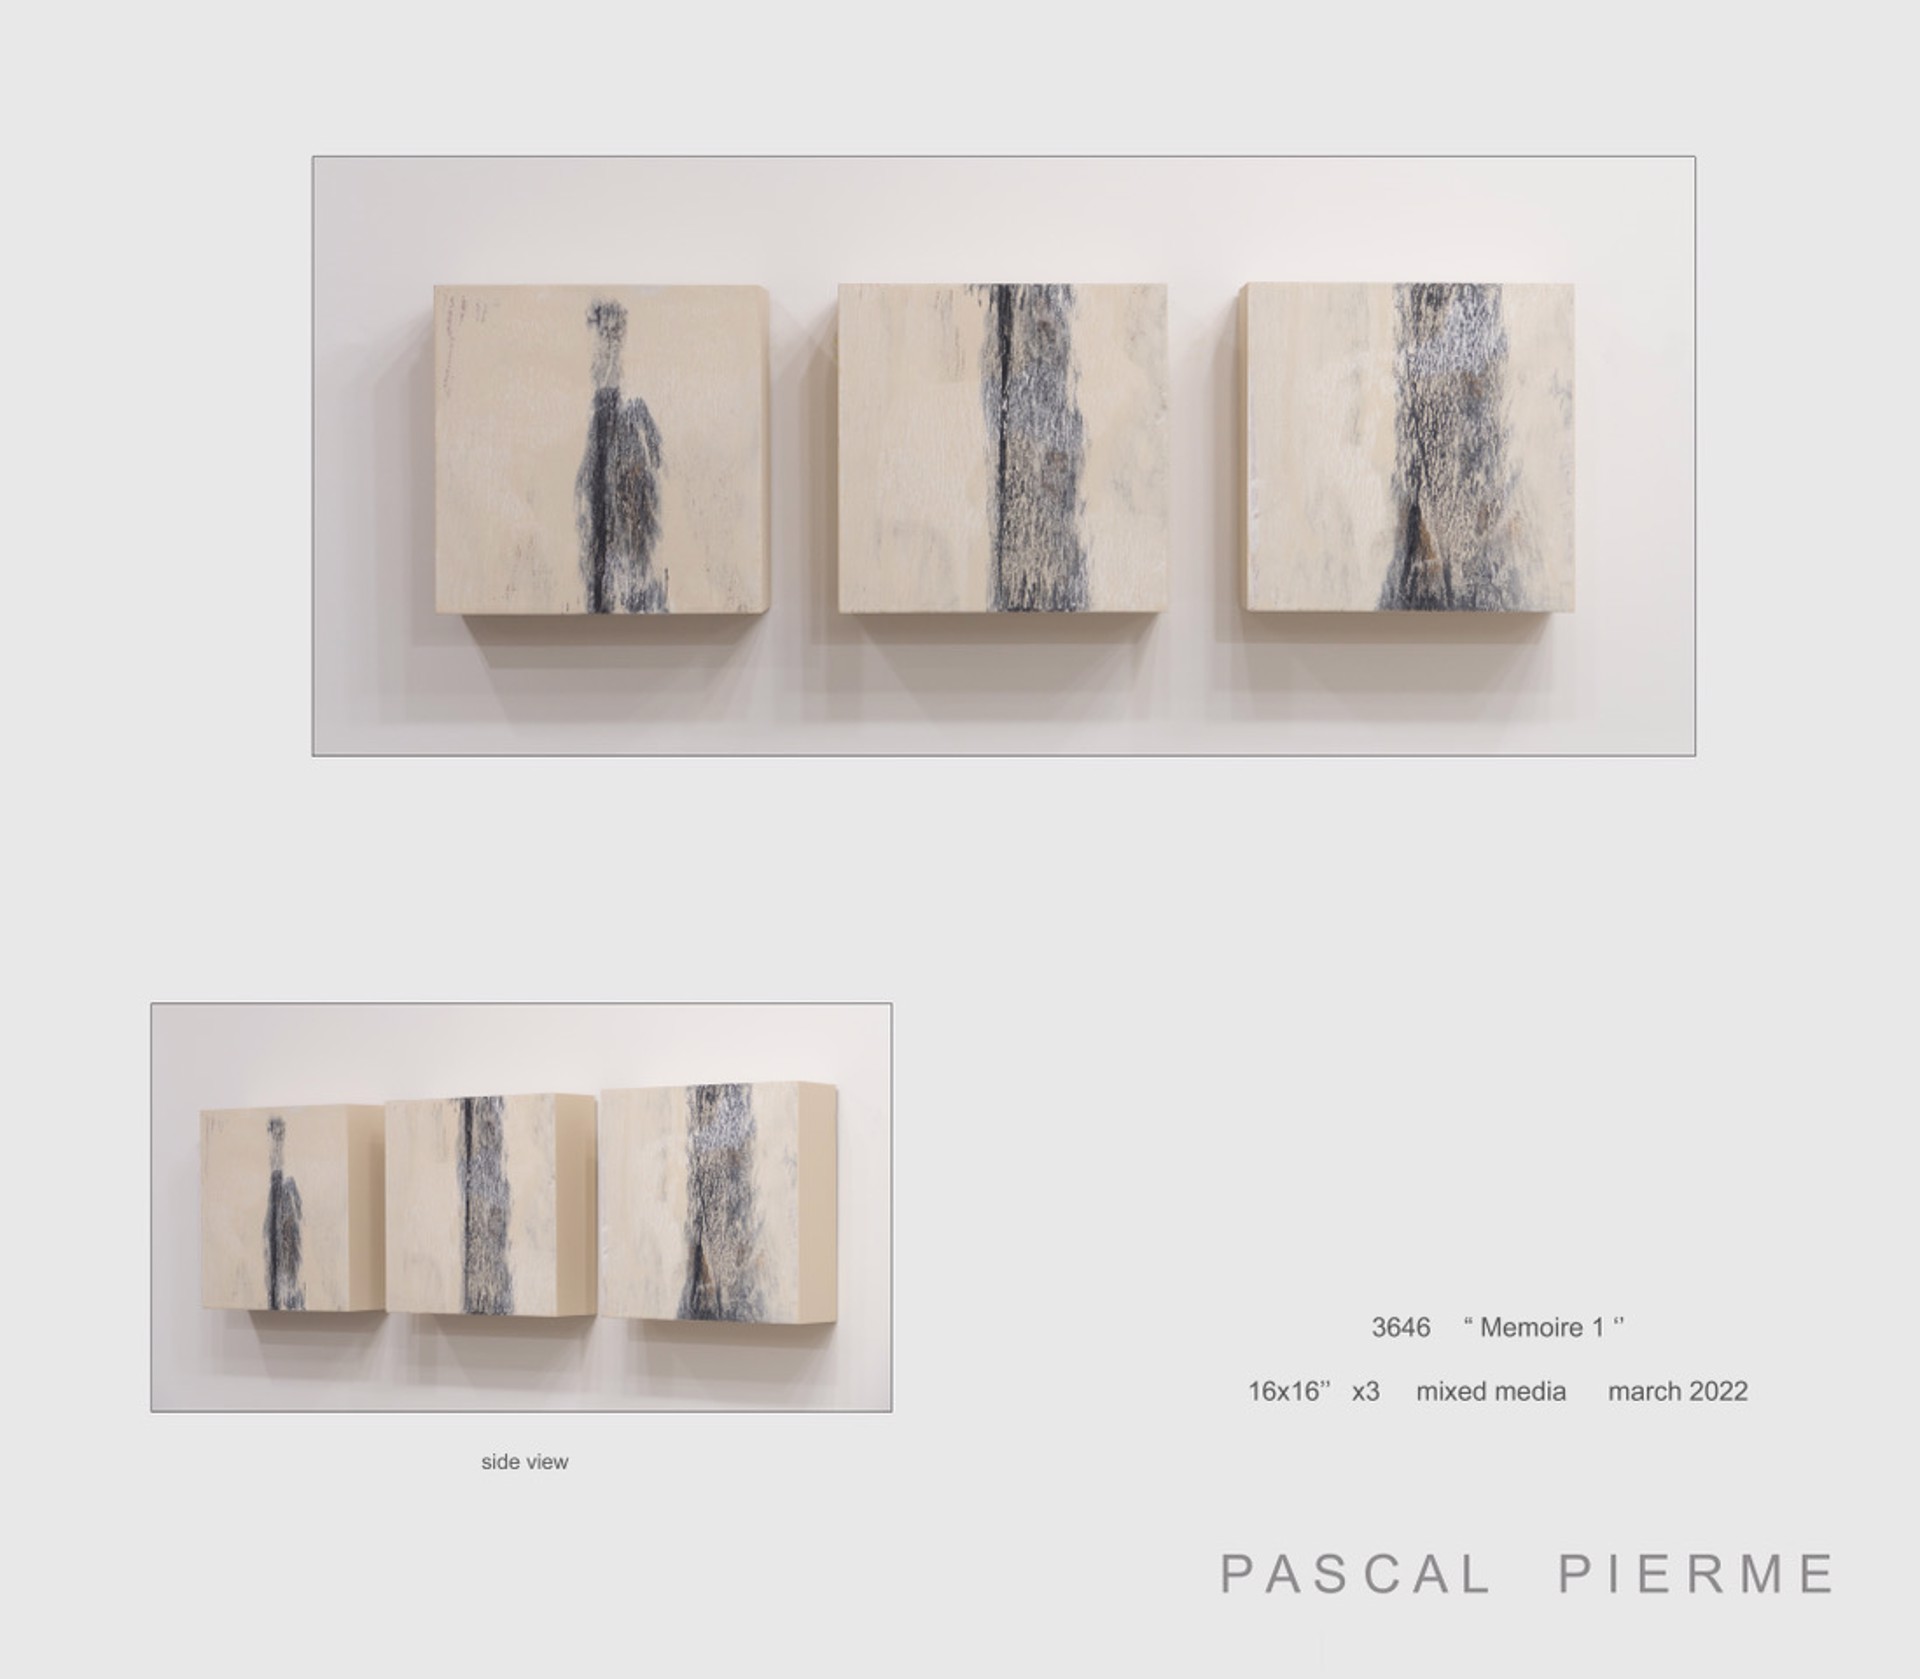 Memoire 1 by Pascal Piermé